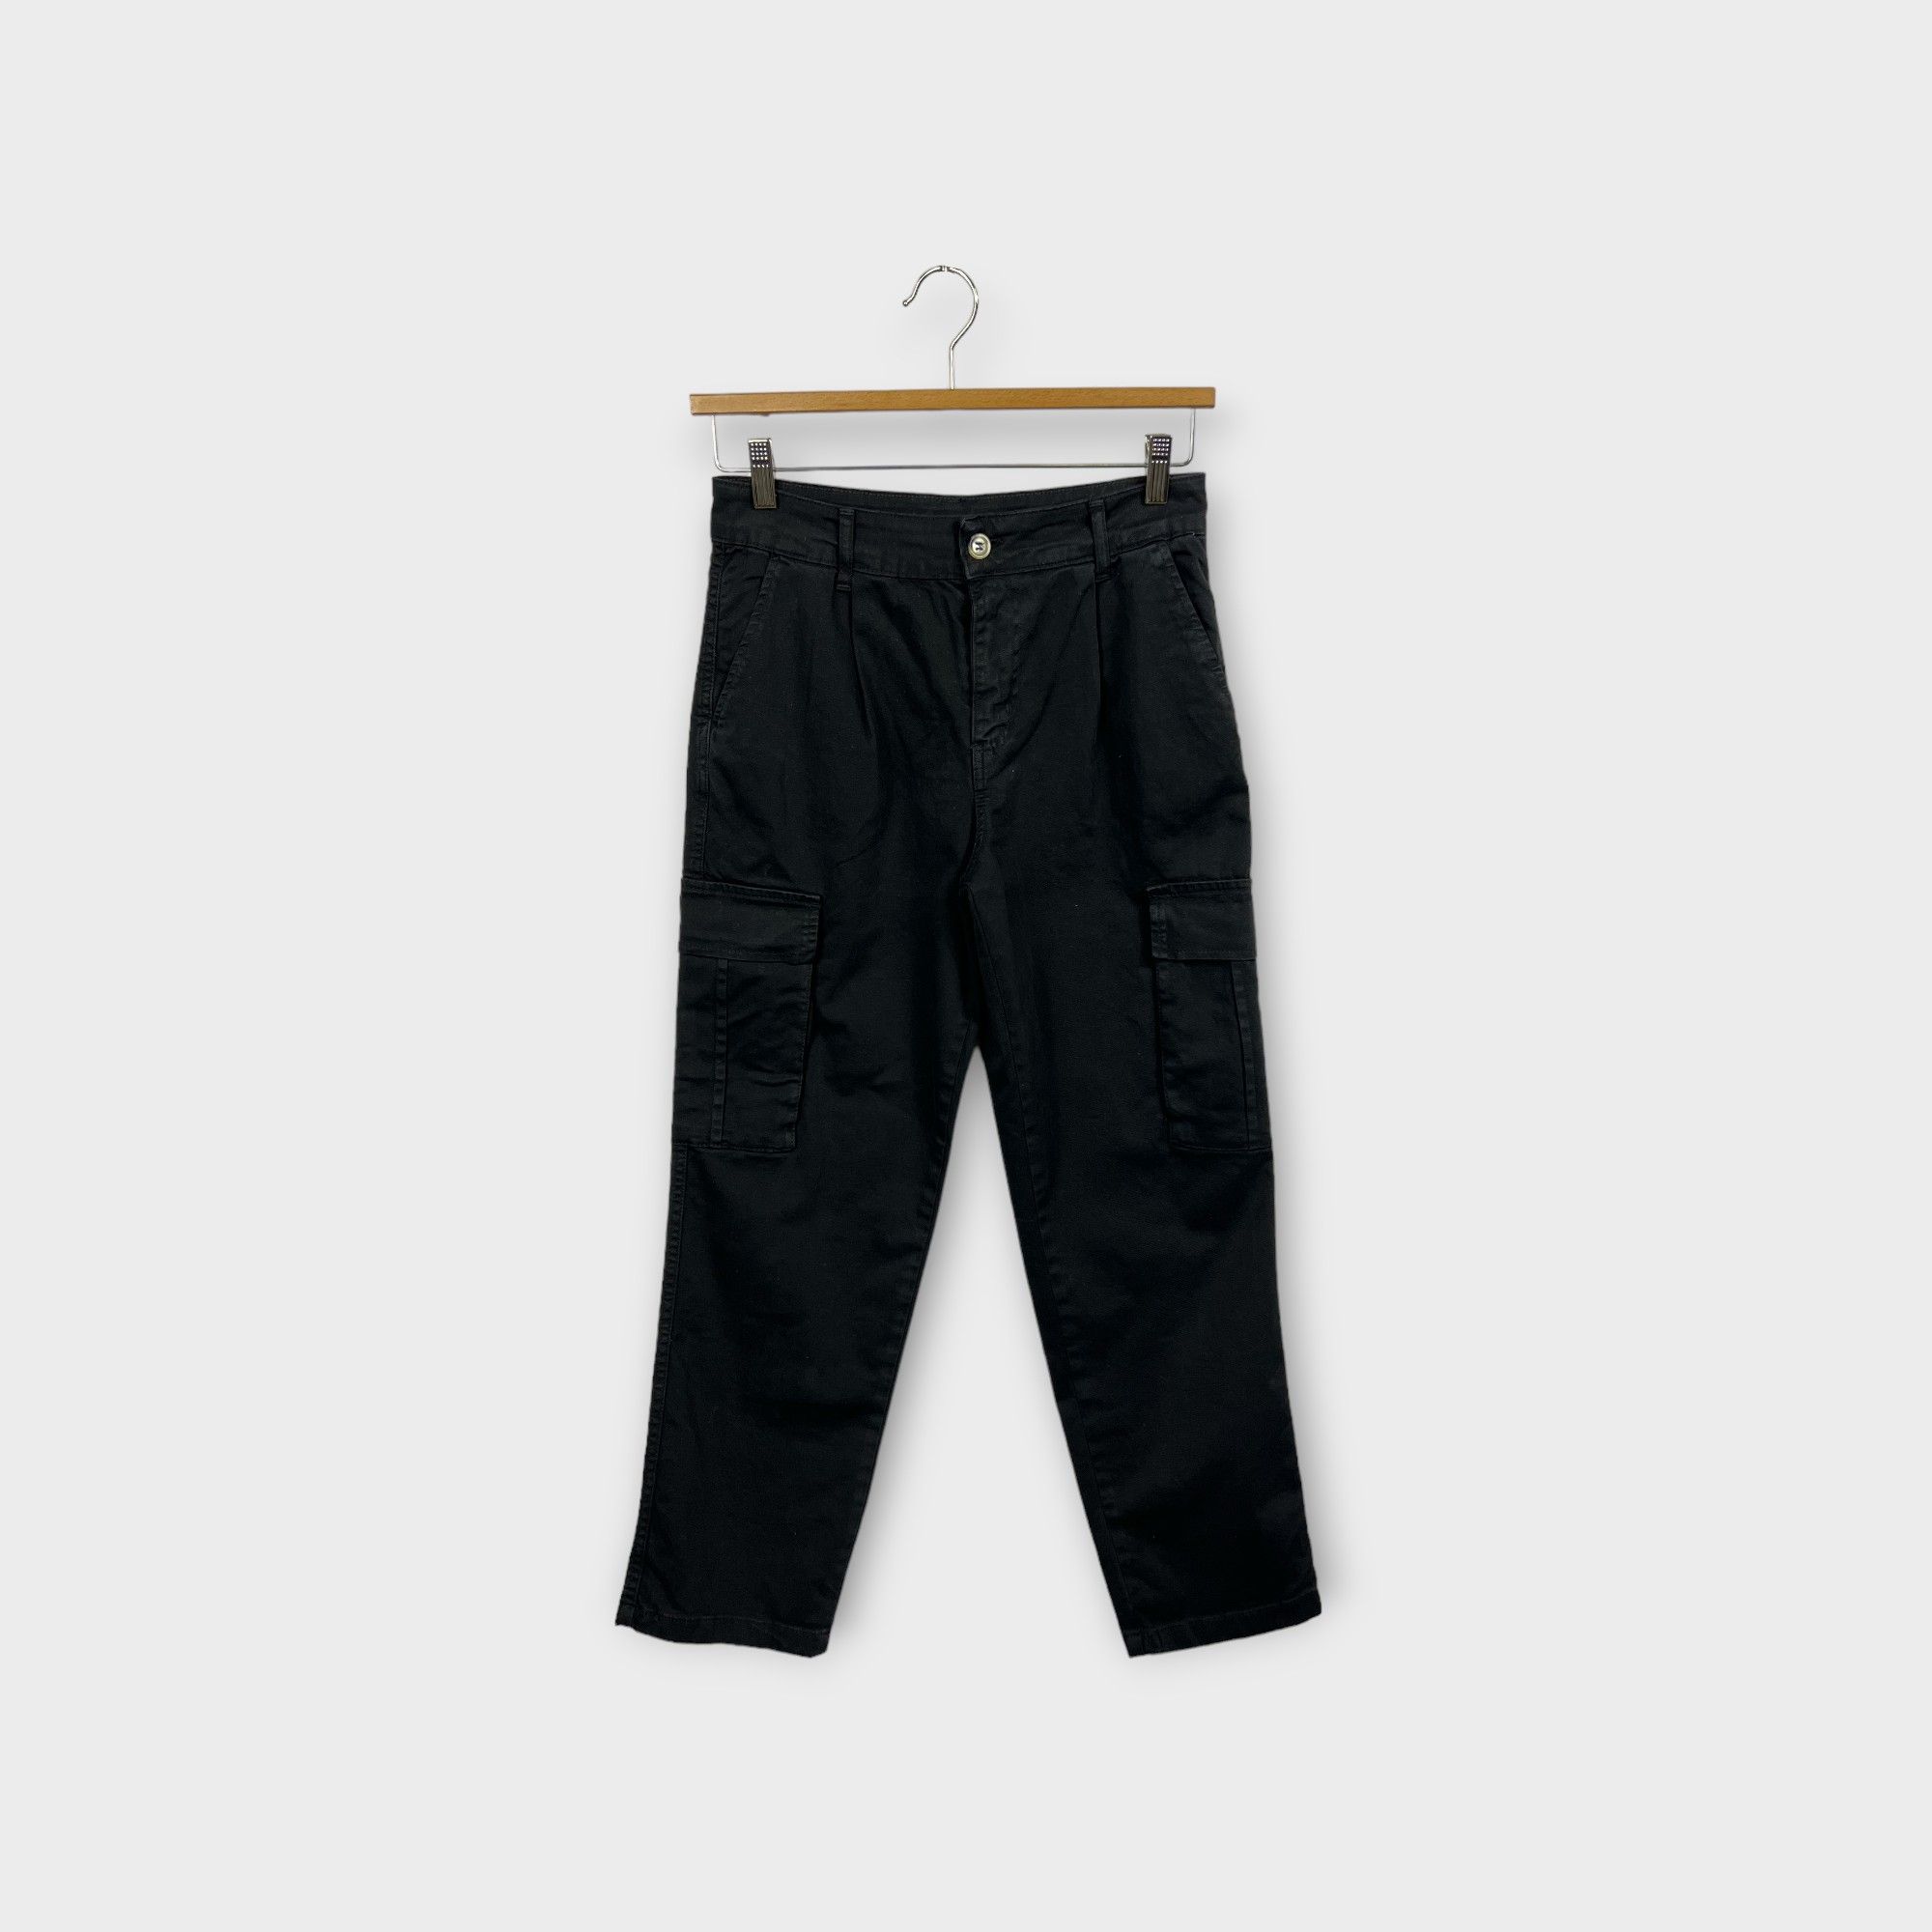 images/virtuemart/product/HELLEH Pantaloni donna modello cargo con tasche laterali in cotone stretch tinto in capo colore nero 1.jpg